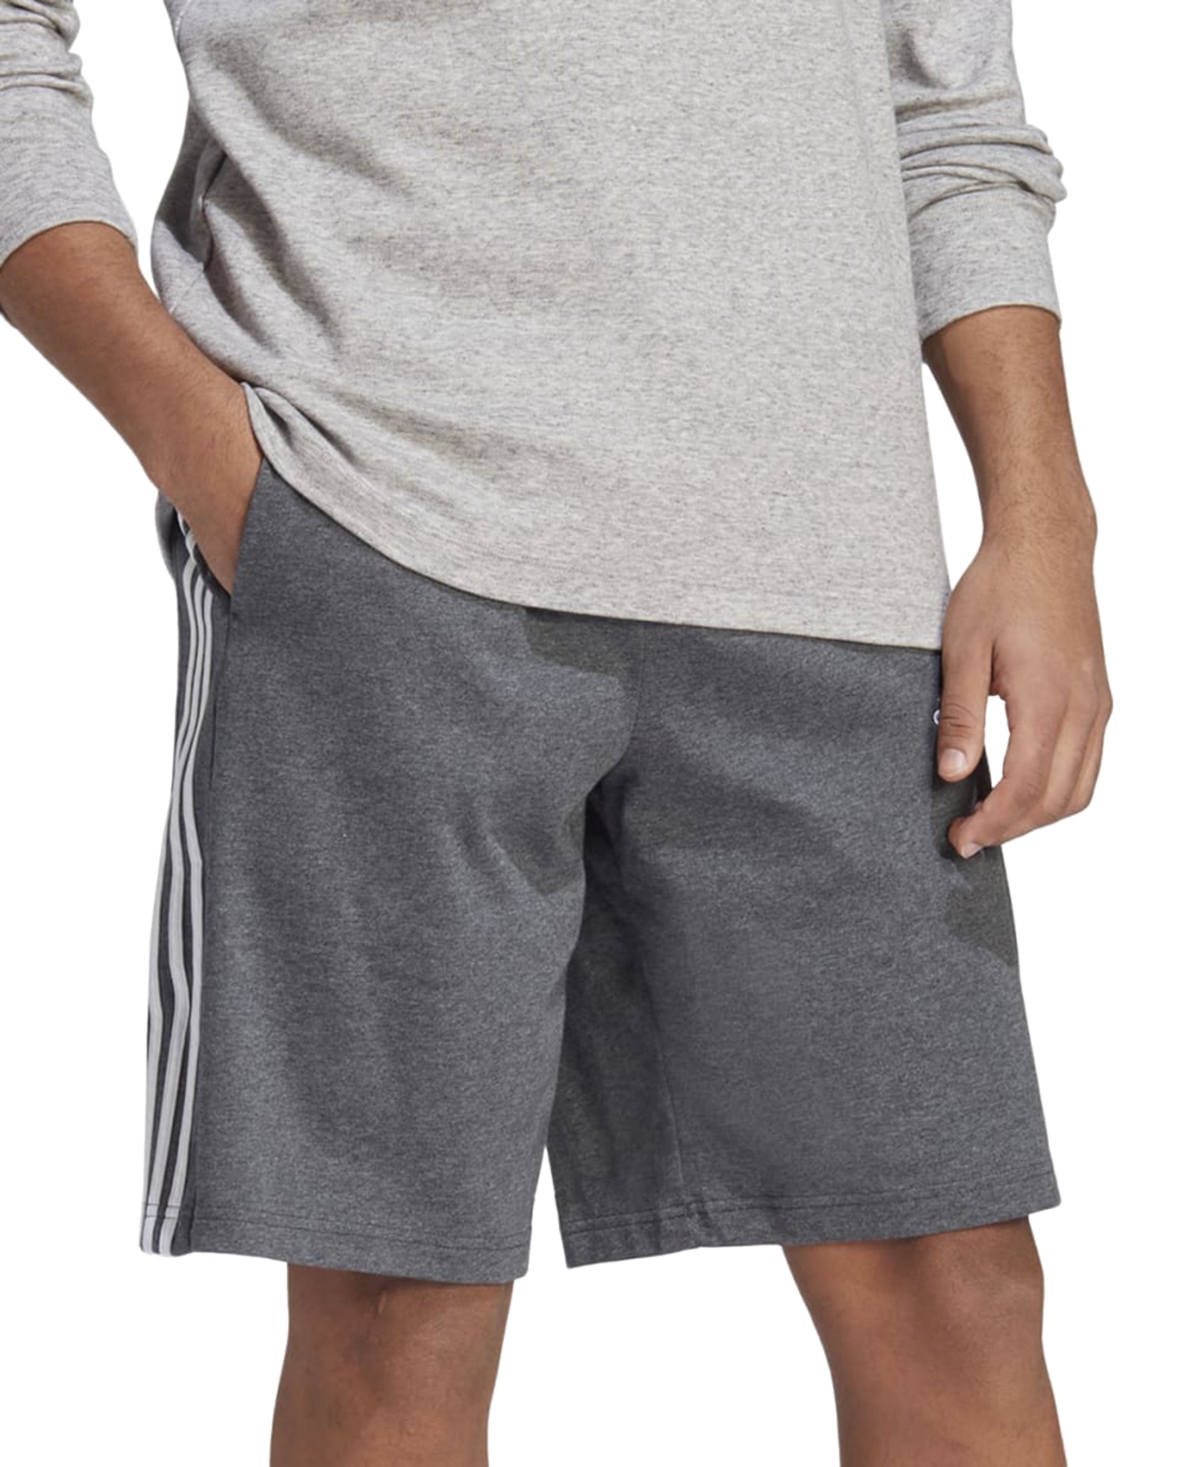 Adidas Originals Men's Essentials Single Jersey 3-stripes 10" Shorts In Dark Grey Heather,white